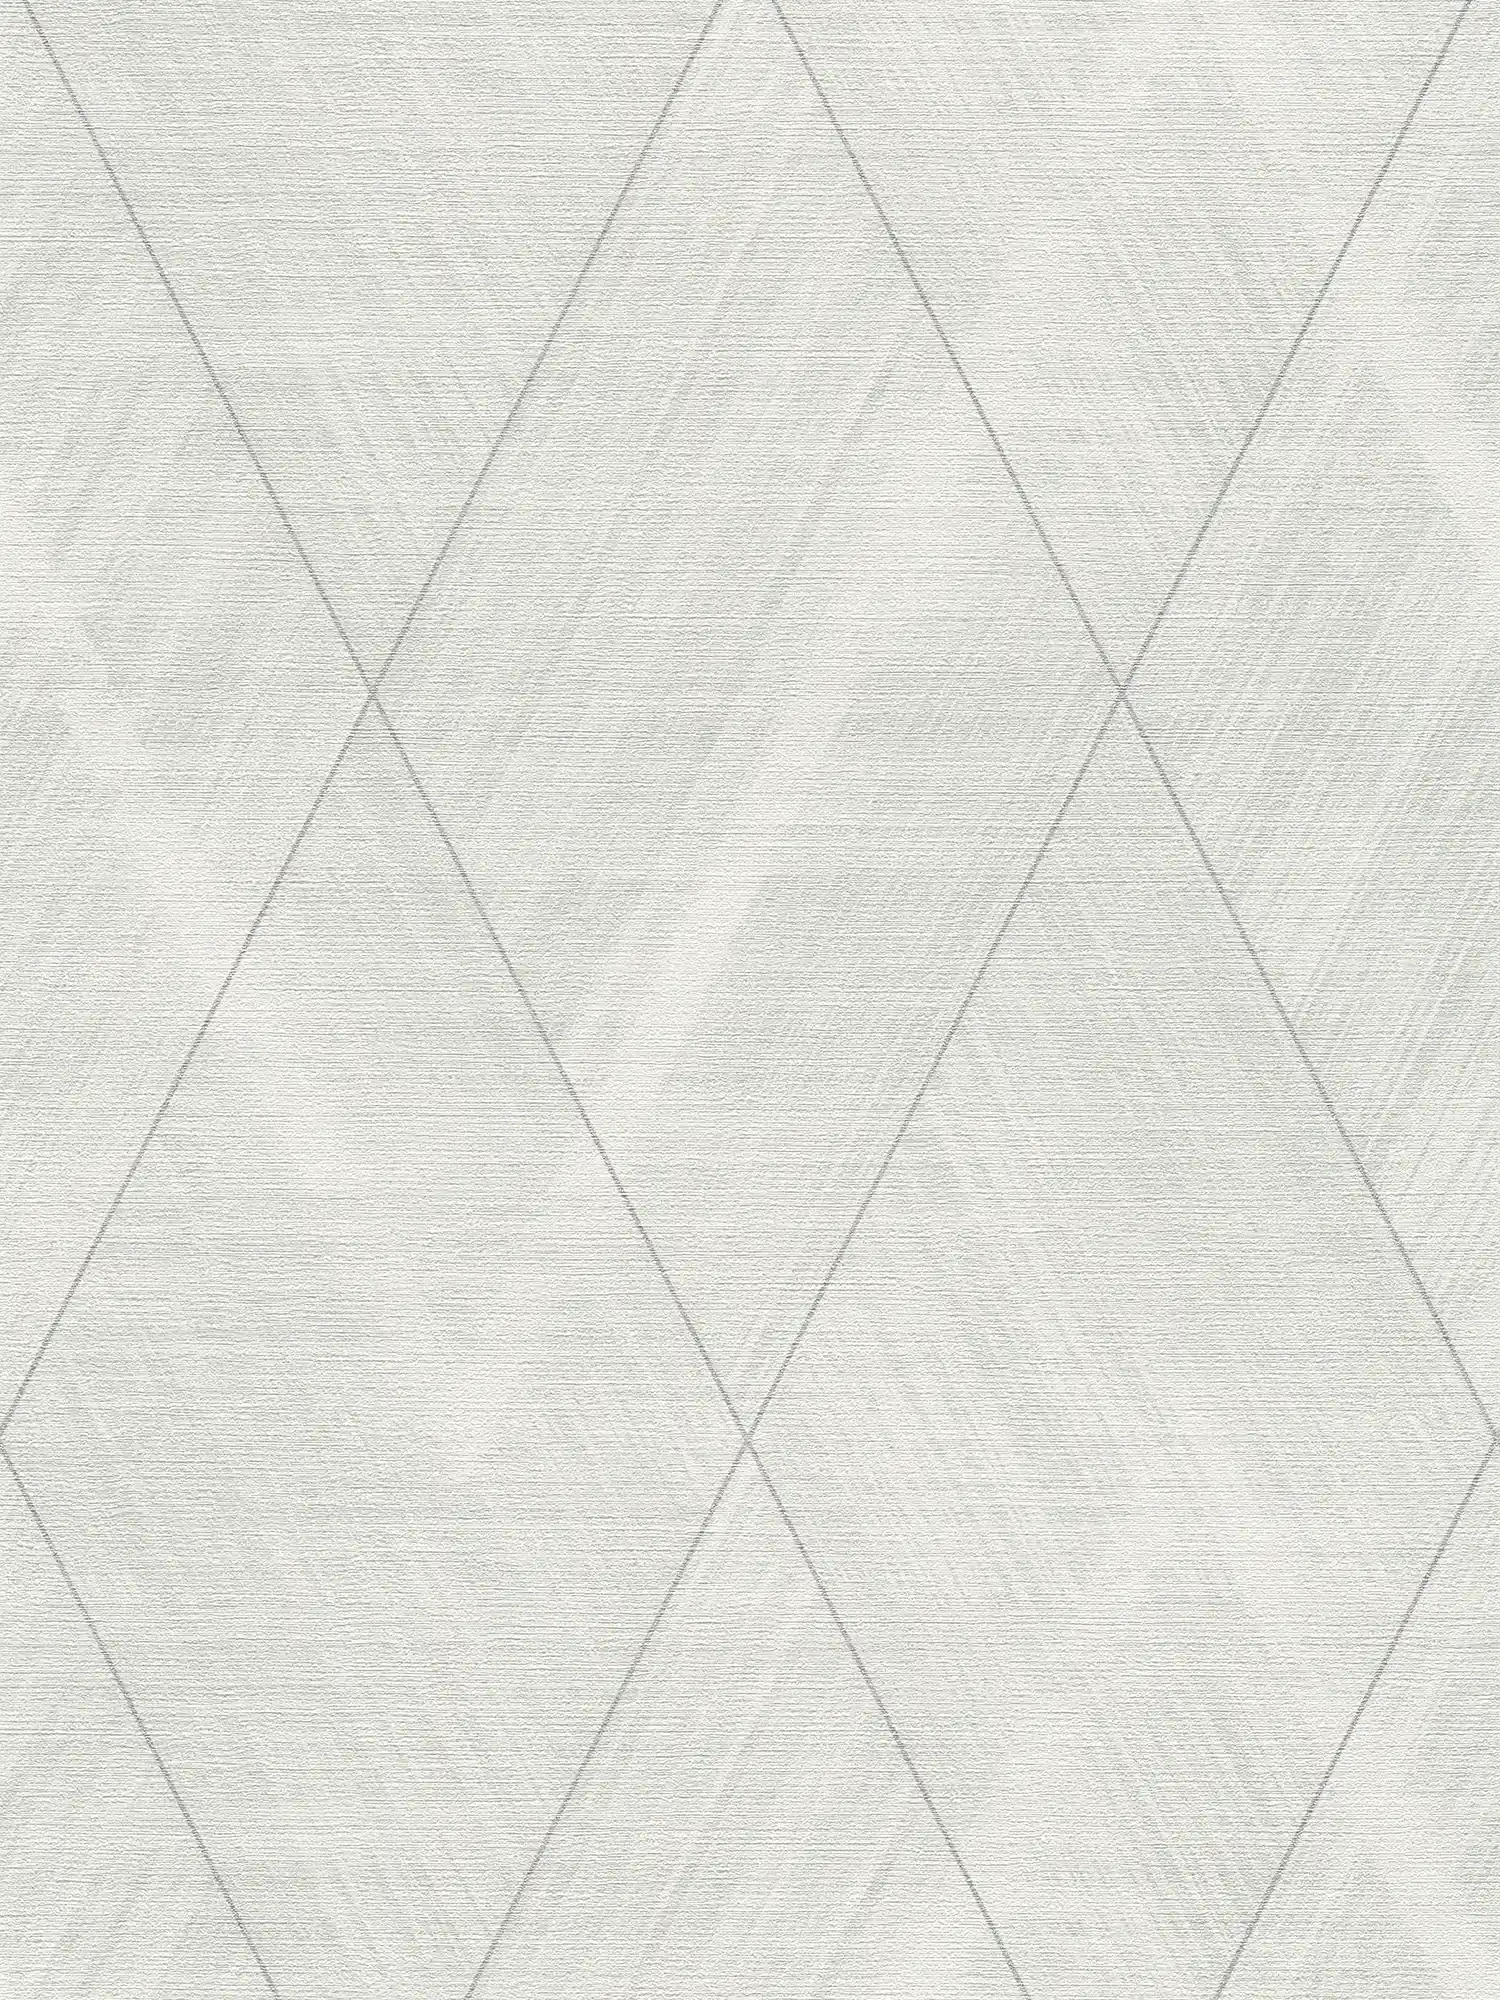         Textielachtig behangpapier met ruitmotief - metallic, wit
    